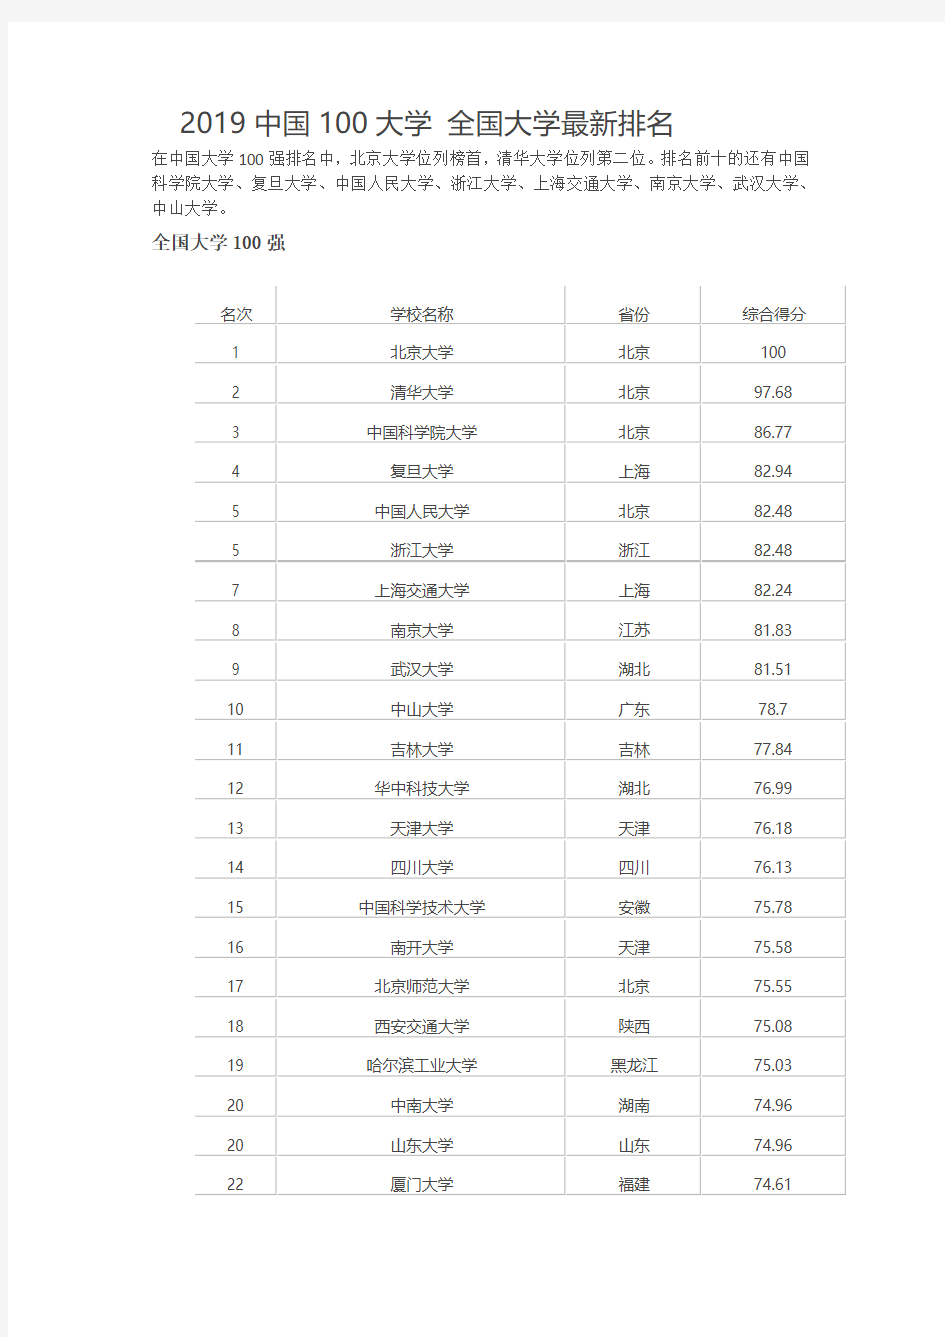 2019中国100大学 全国大学最新排名